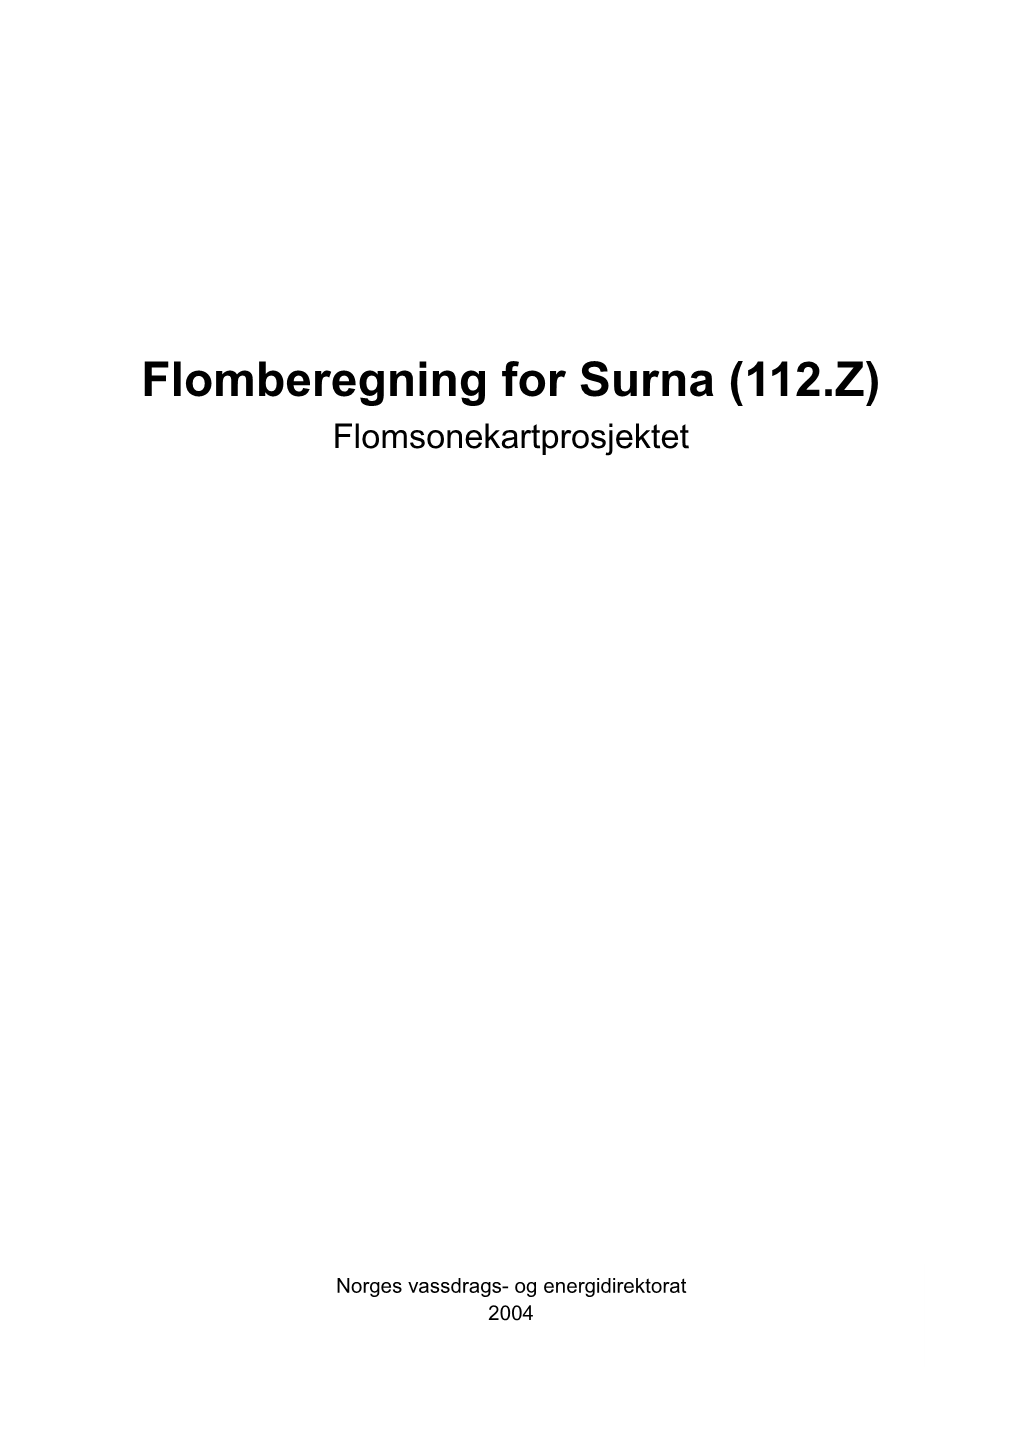 Flomberegning for Surna (112.Z) Flomsonekartprosjektet